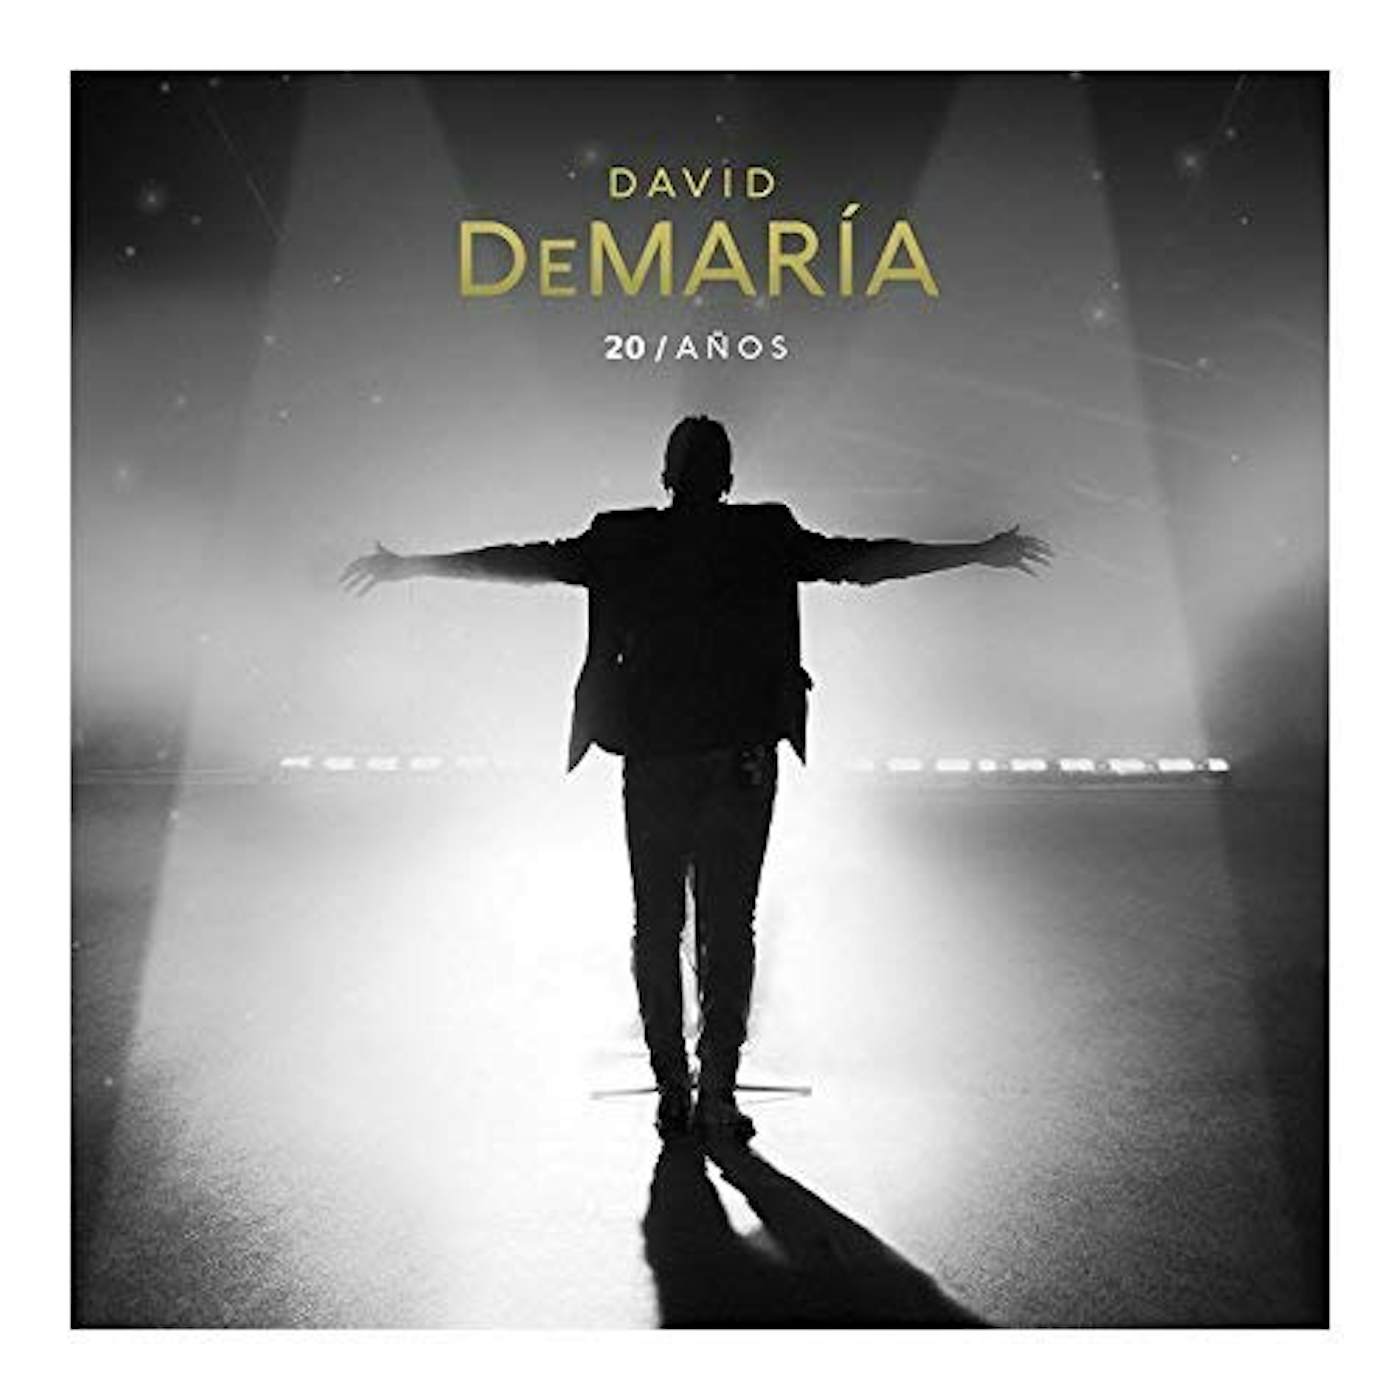 David DeMaría 20 ANOS CD